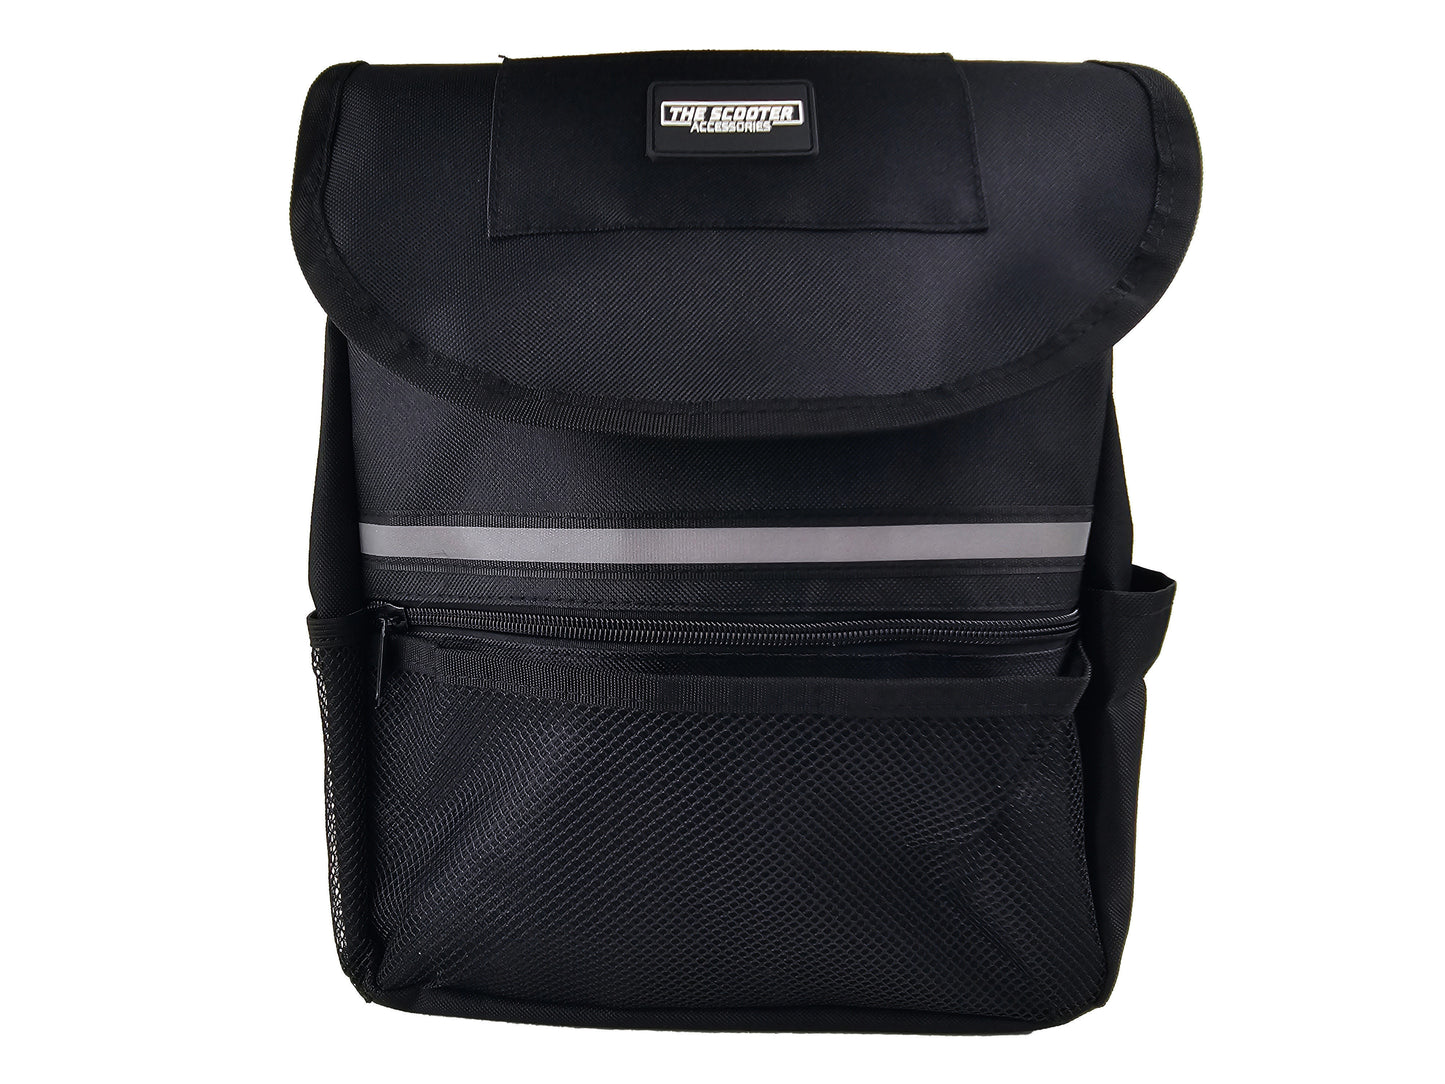 Large Deluxe Armrest Bag